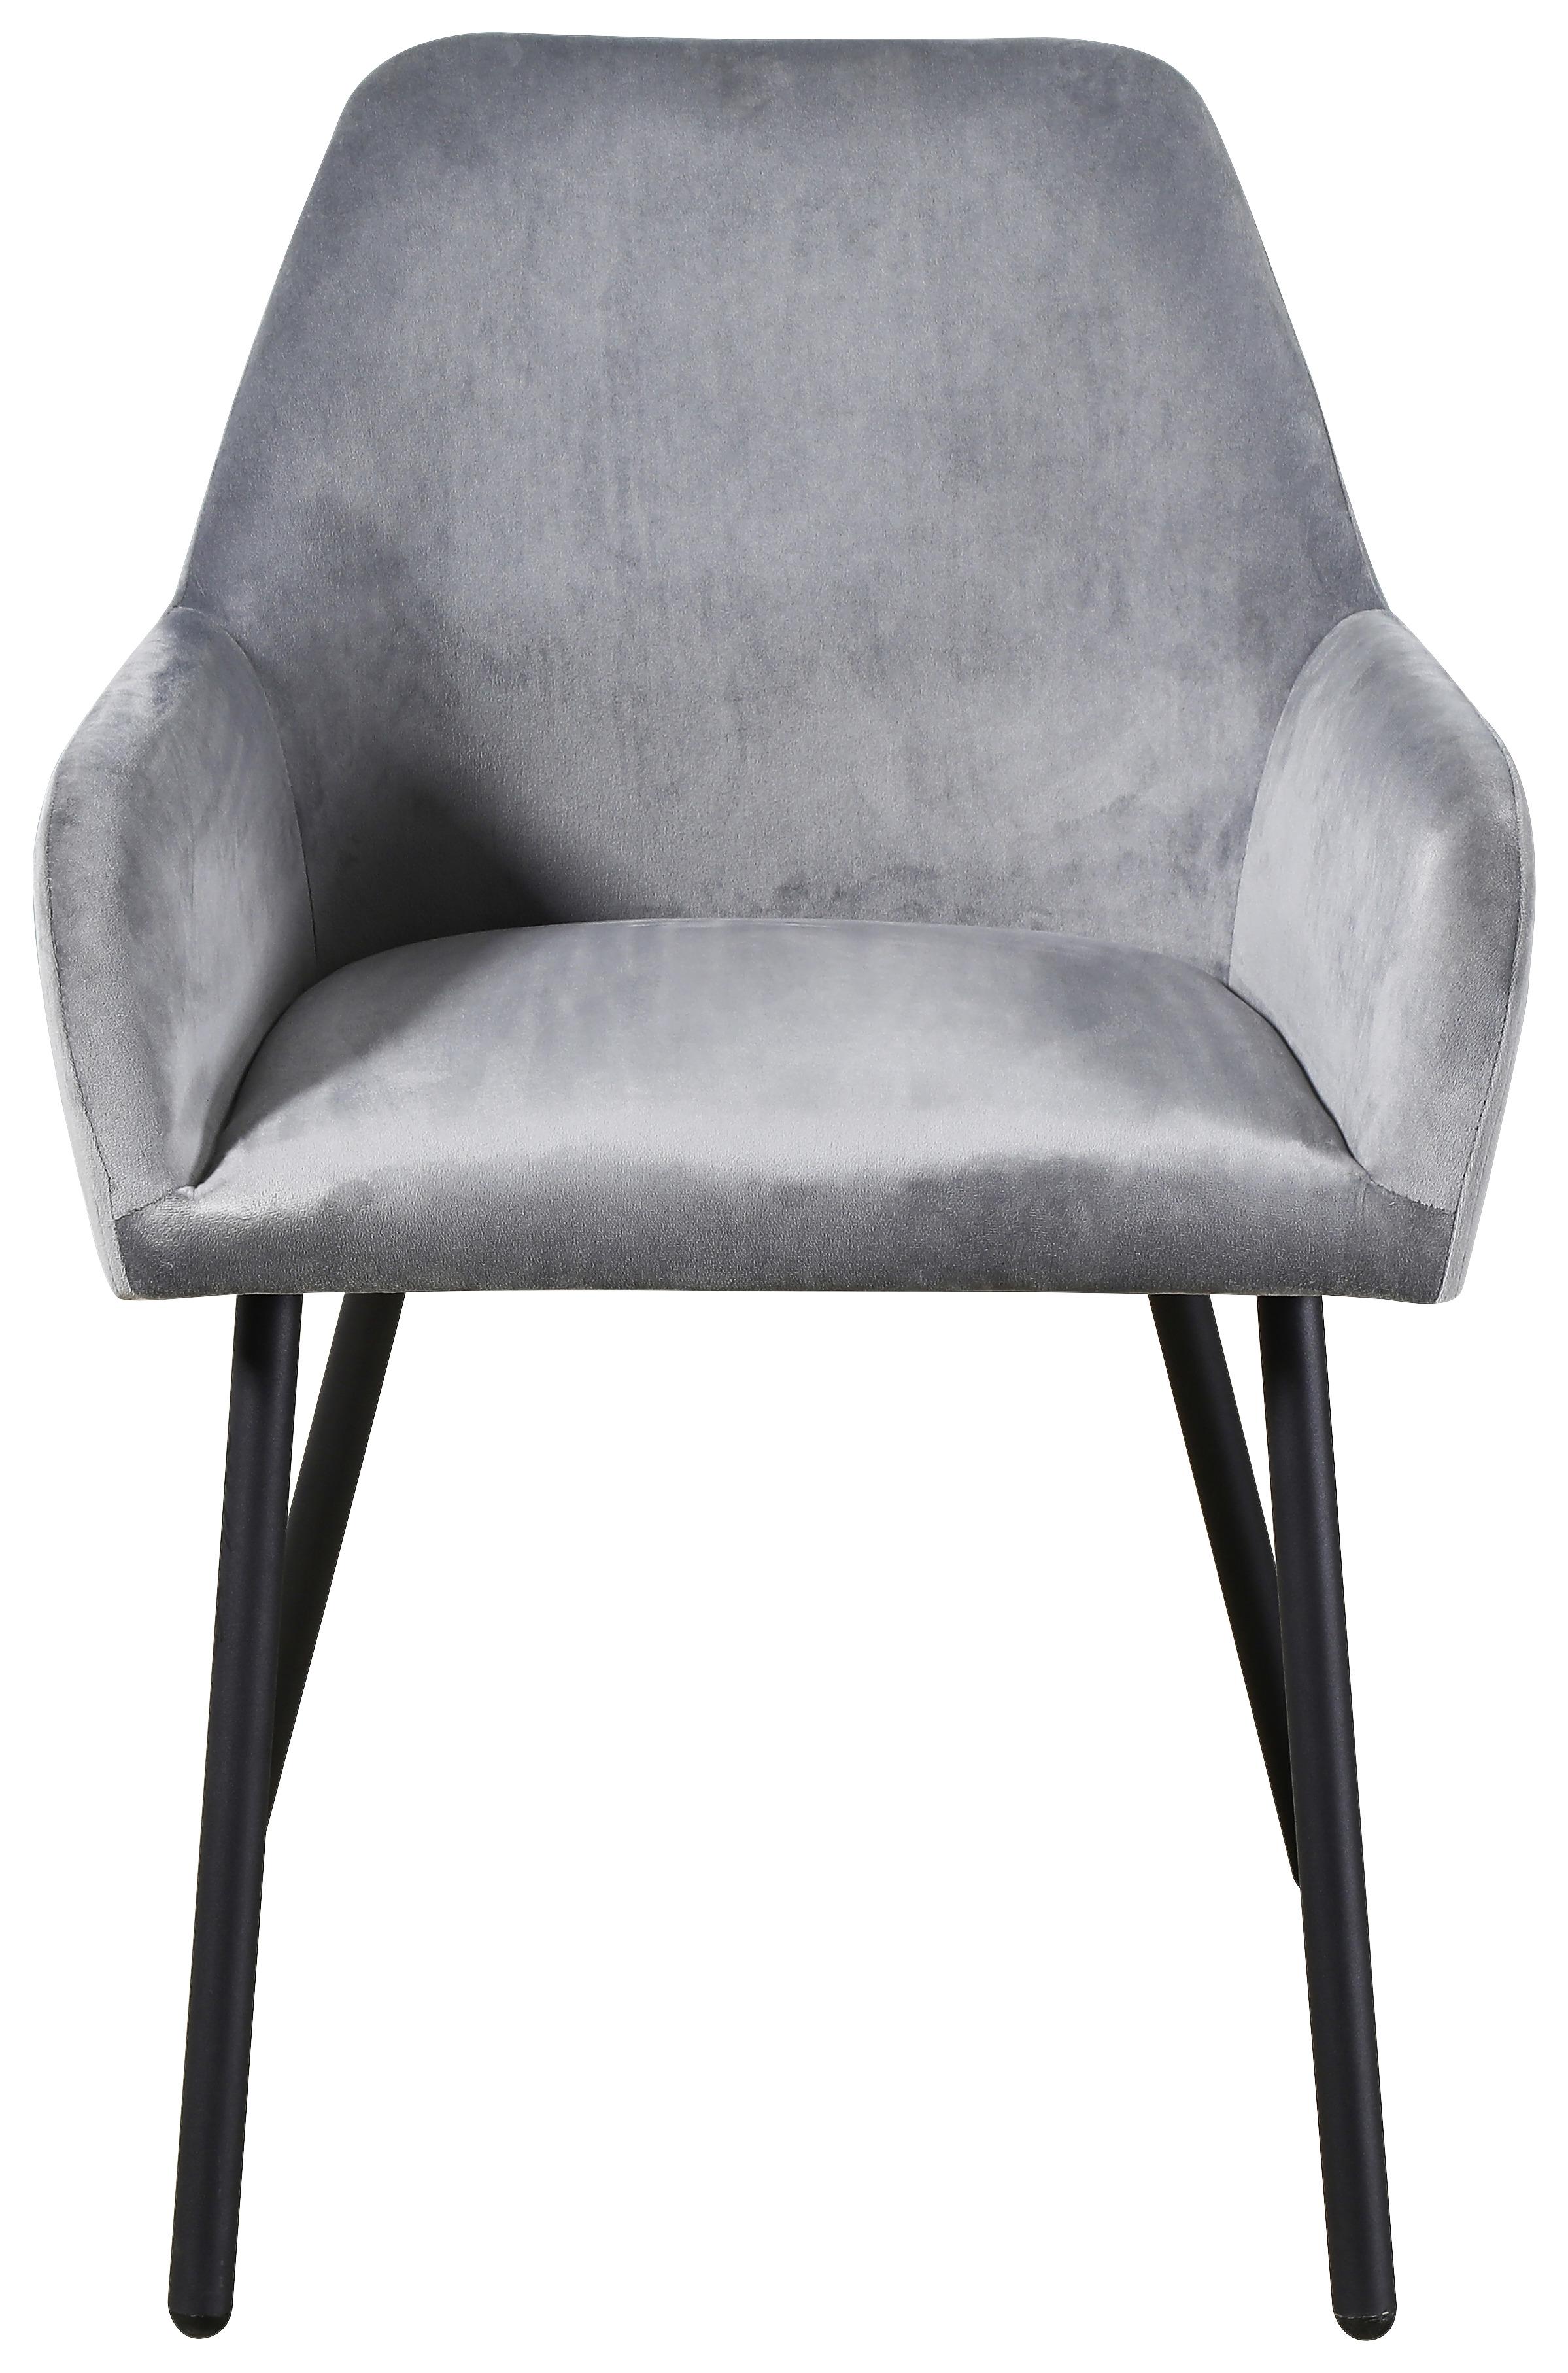 Čtyřnohá Židle Sina - šedá/černá, Konvenční, kov/dřevo (61/81/57cm)